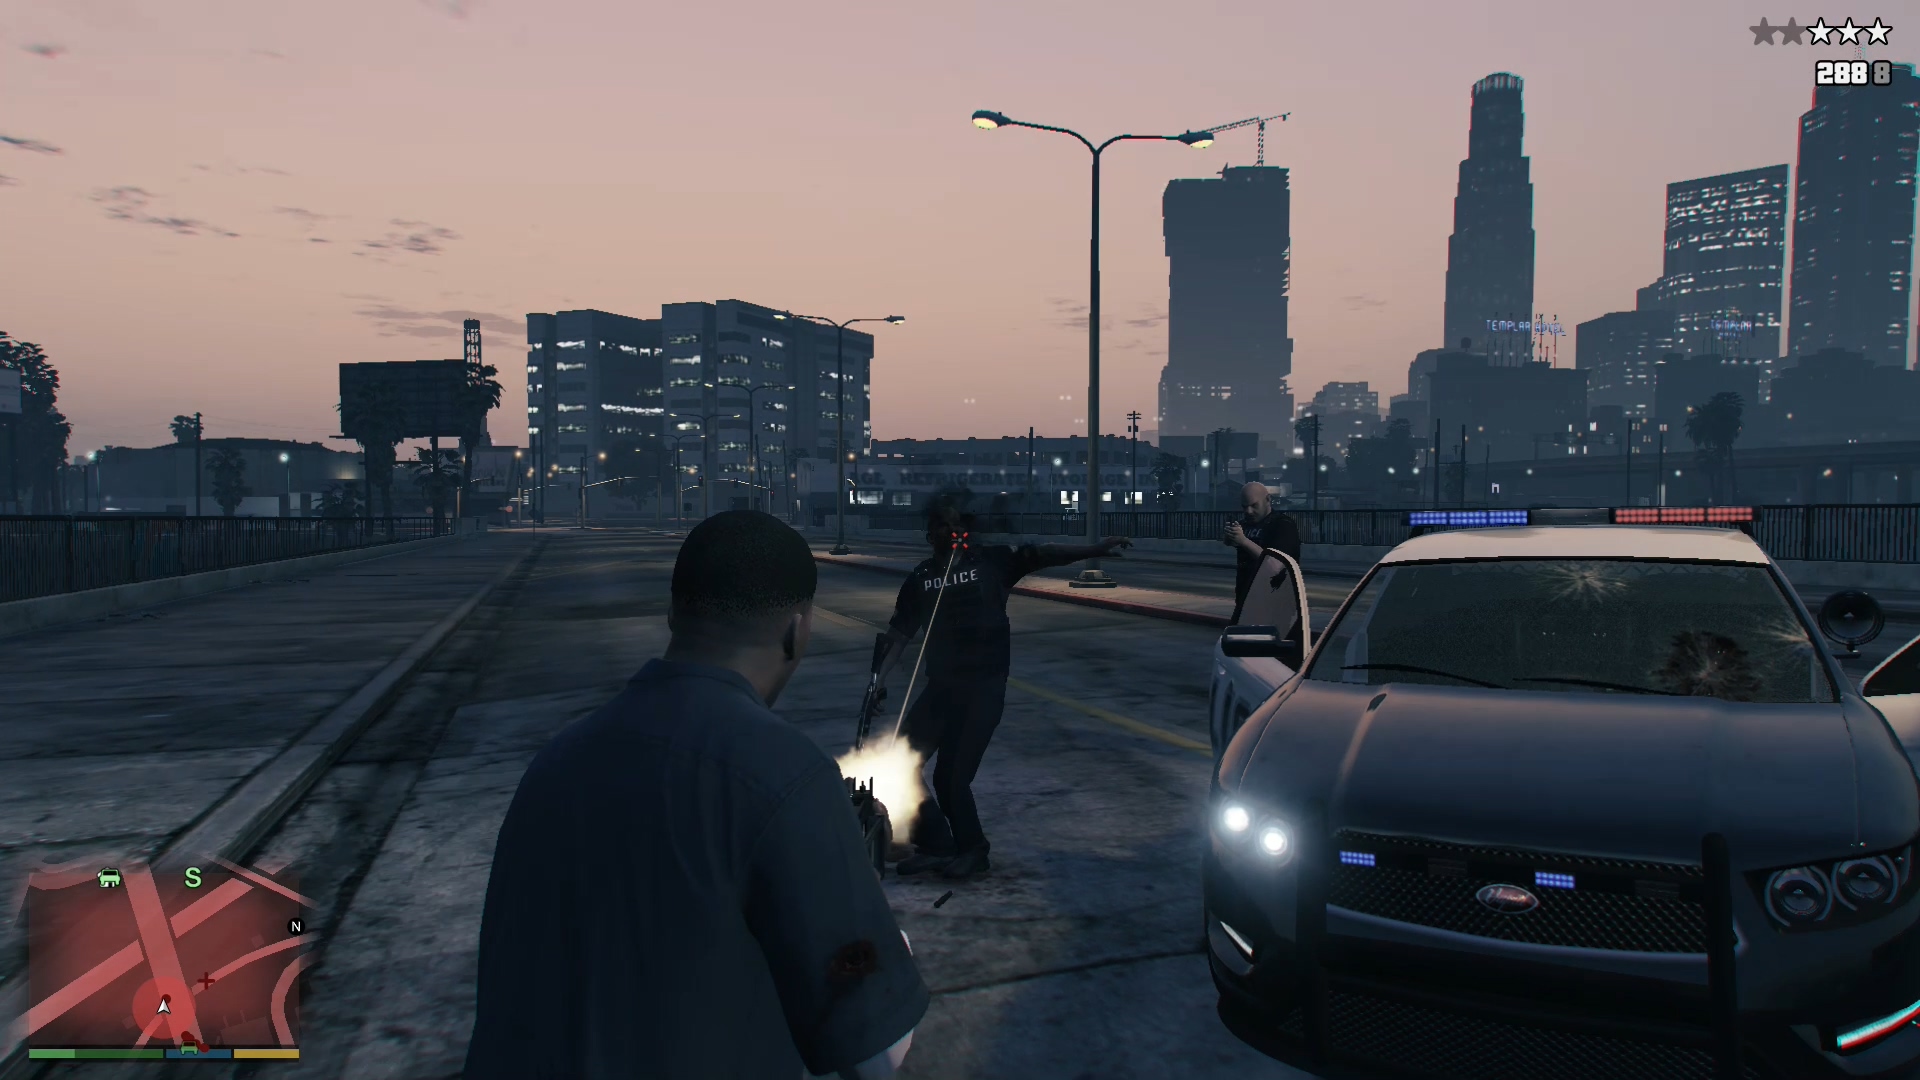 GTA 5 Premium Edition. Изменение игры. Запуска игры "Grand Theft auto 5" (сирена, стрельба). Игра про изменение истории. Игра изменилась 2012